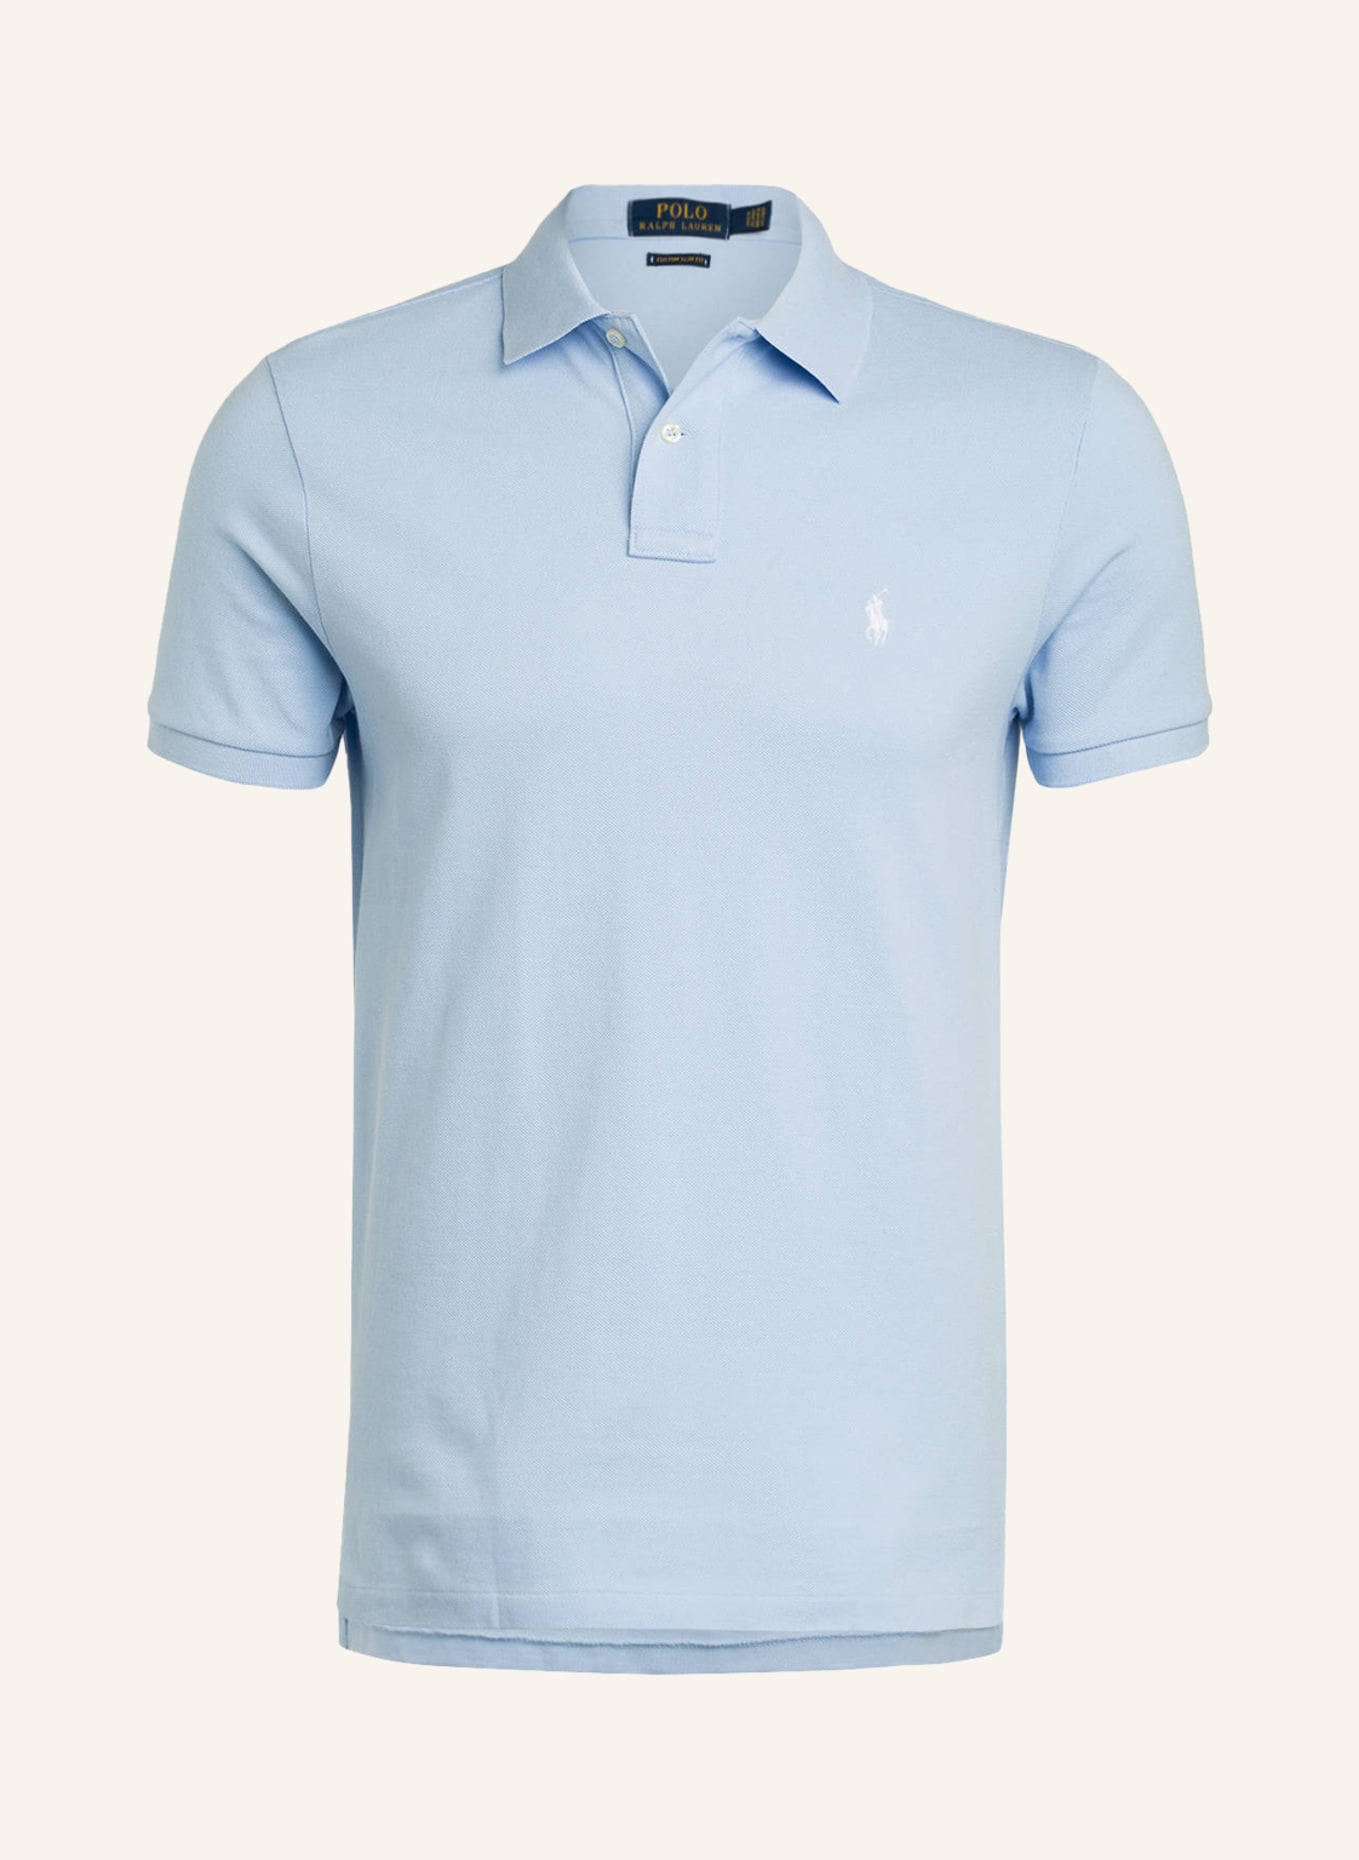 POLO RALPH LAUREN Piqué-Poloshirt Custom Slim Fit , Farbe: EISBLAU (Bild 1)